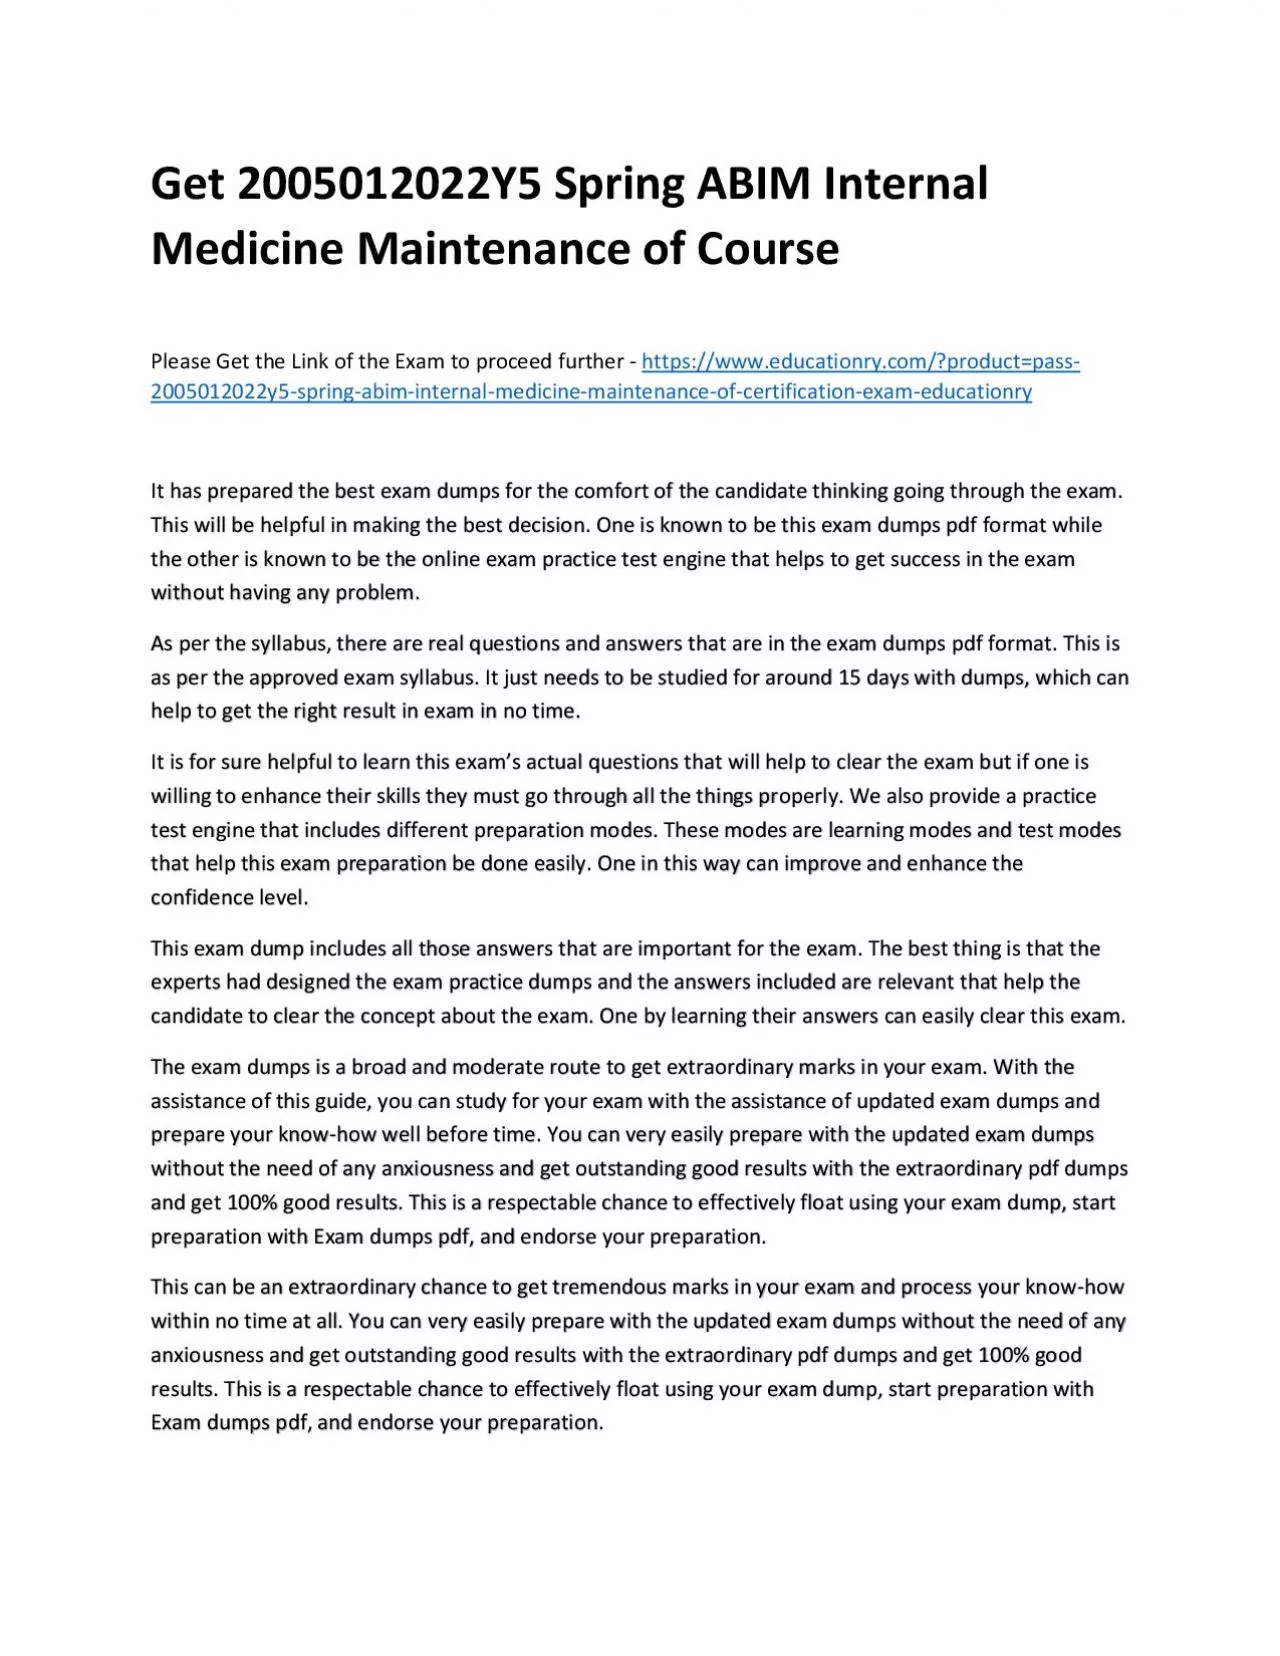 Get 2005012022Y5 Spring ABIM Internal Medicine Maintenance of Practice Course